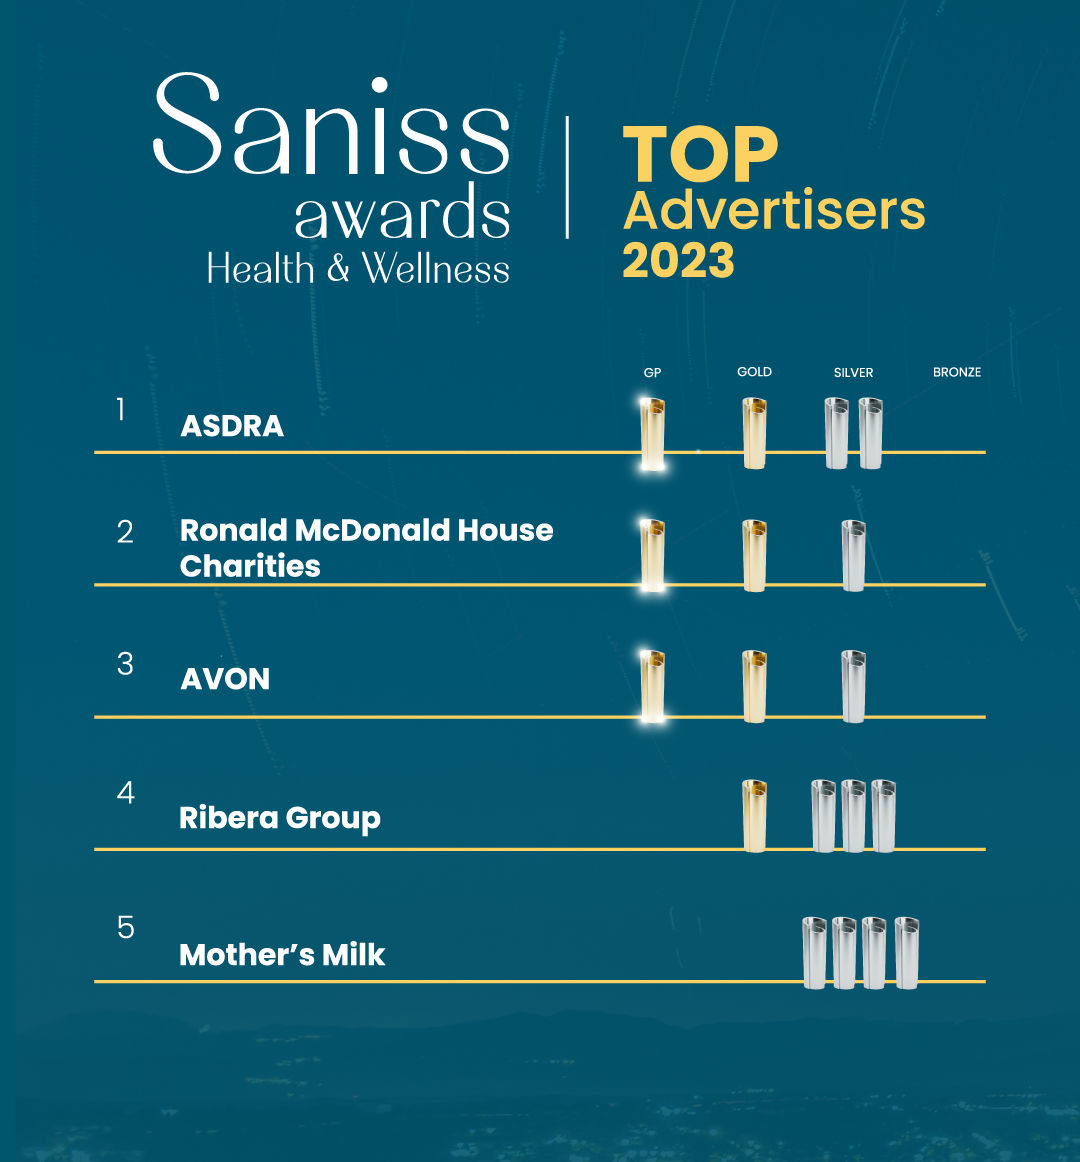 Conoce a los anunciantes que lideraron el ranking de Saniss Awards 2023